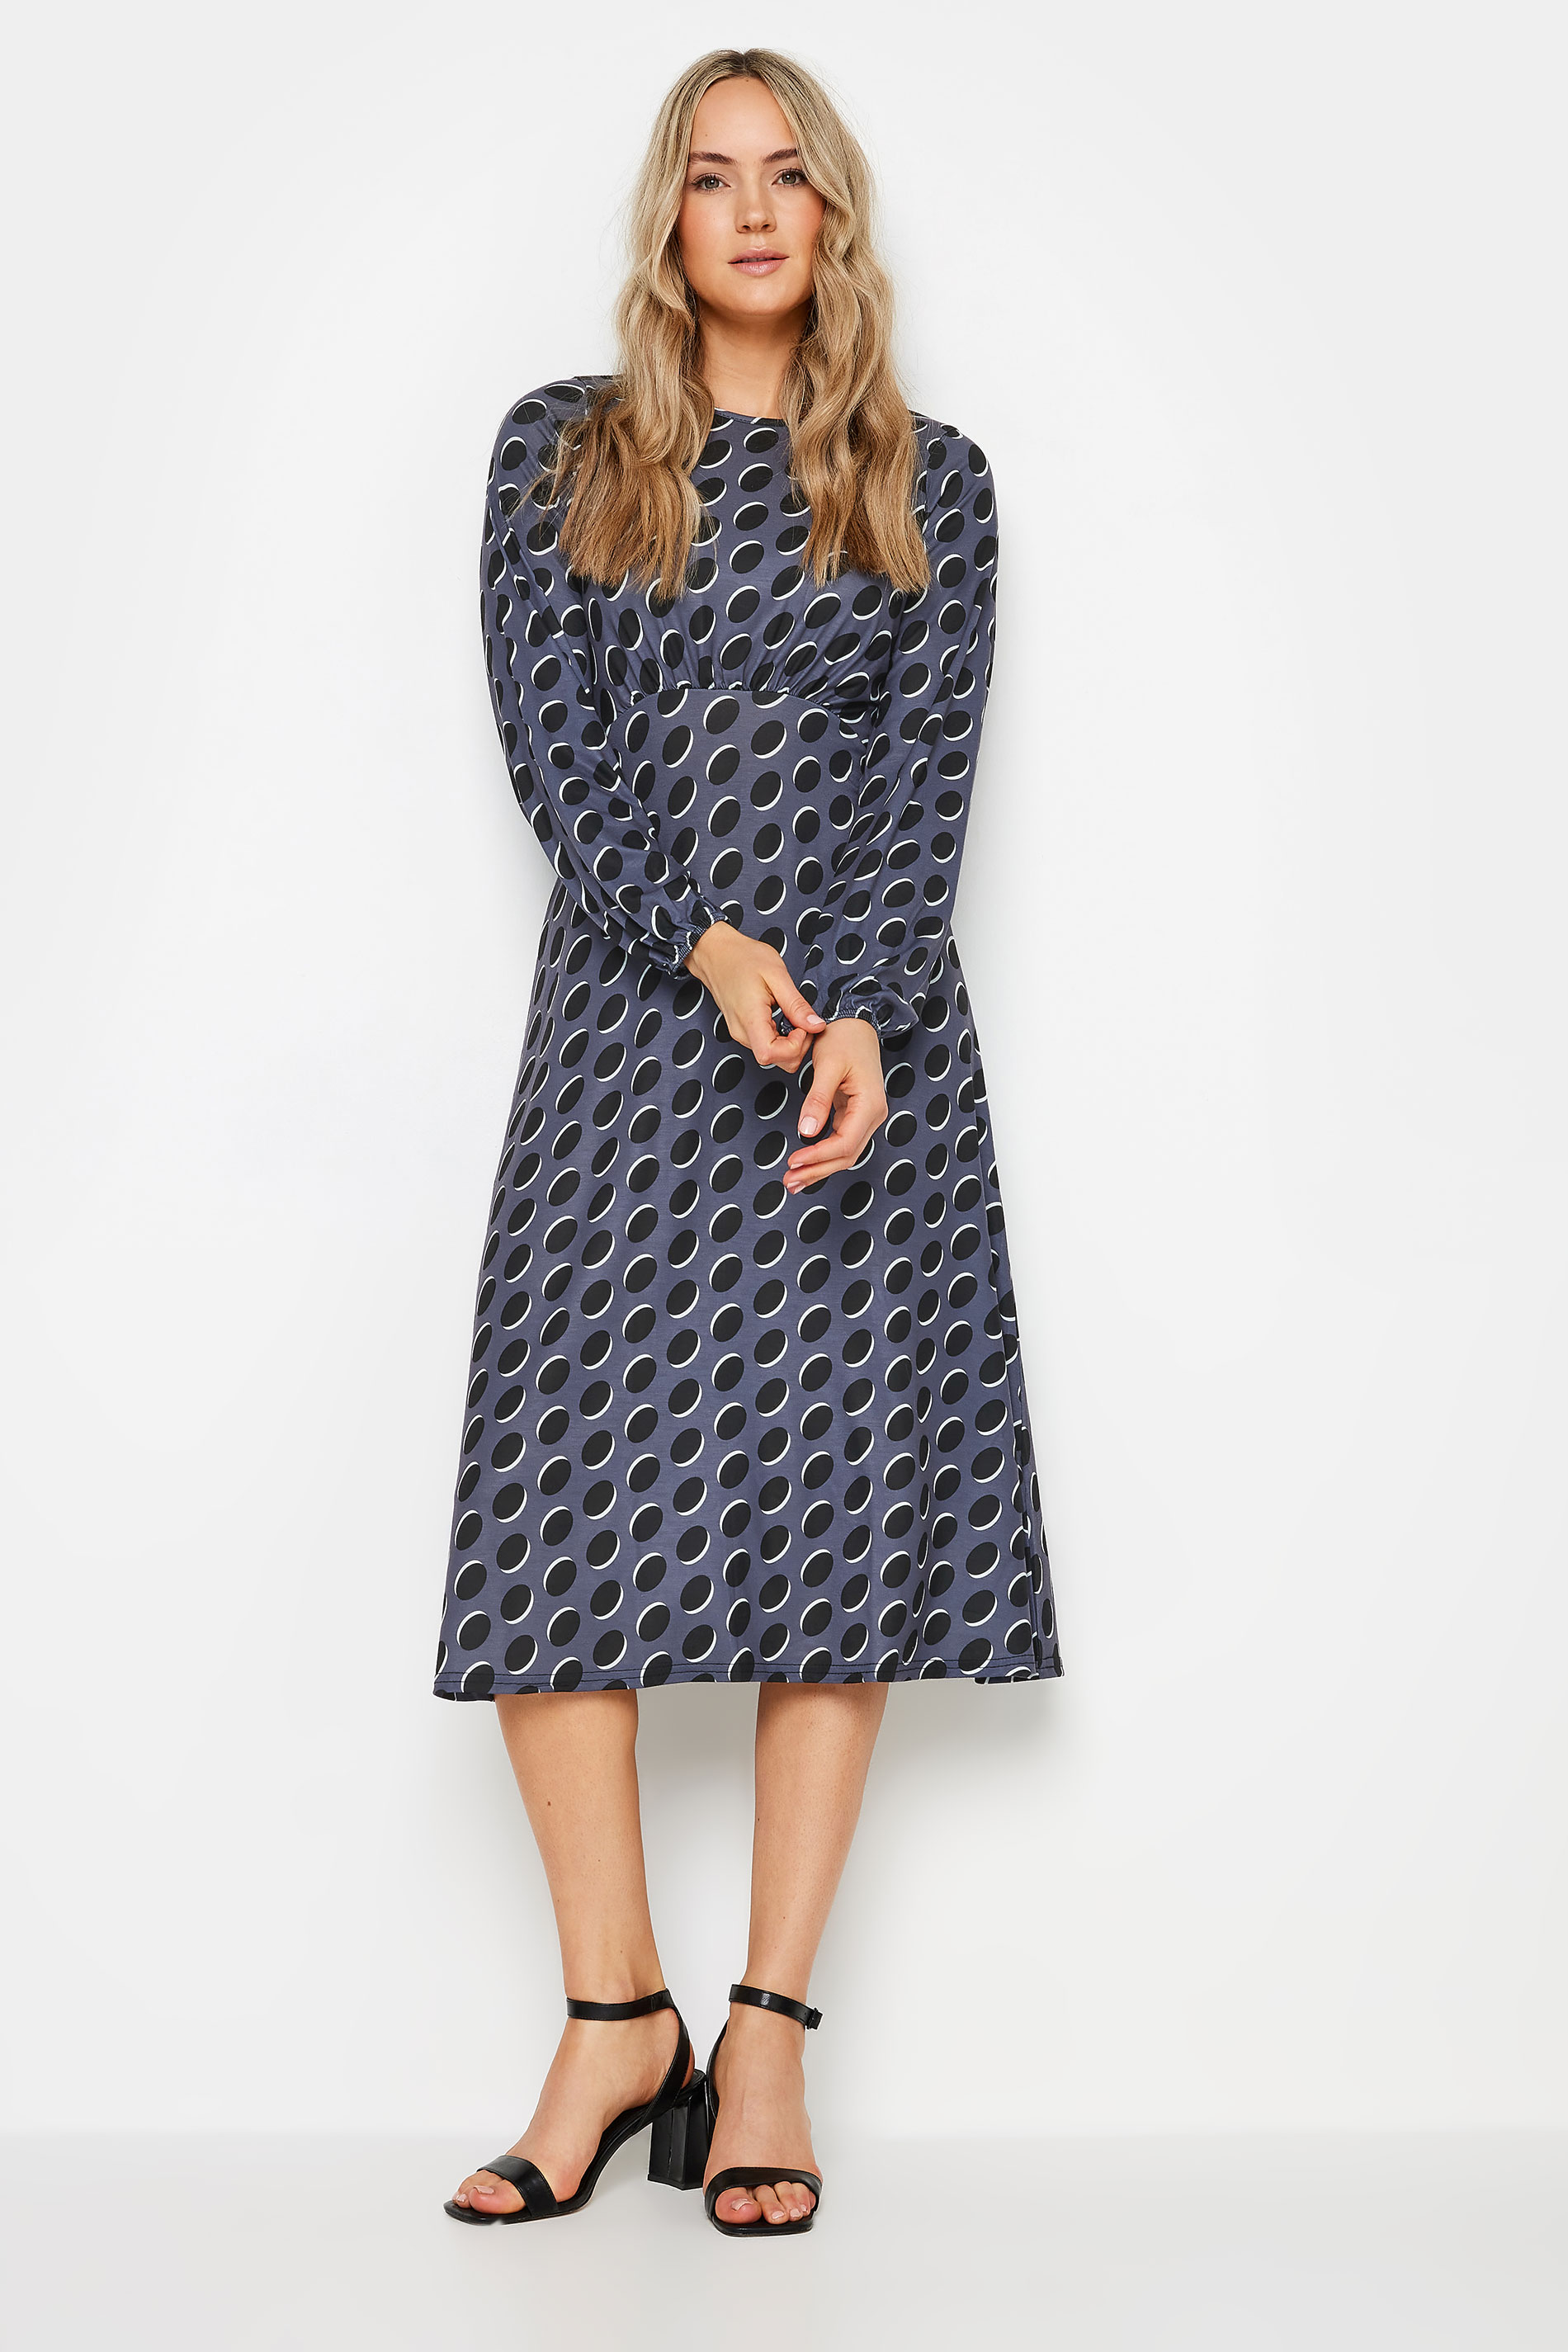 LTS Tall Charcoal Grey Spot Print Midi Dress | Long Tall Sally 2